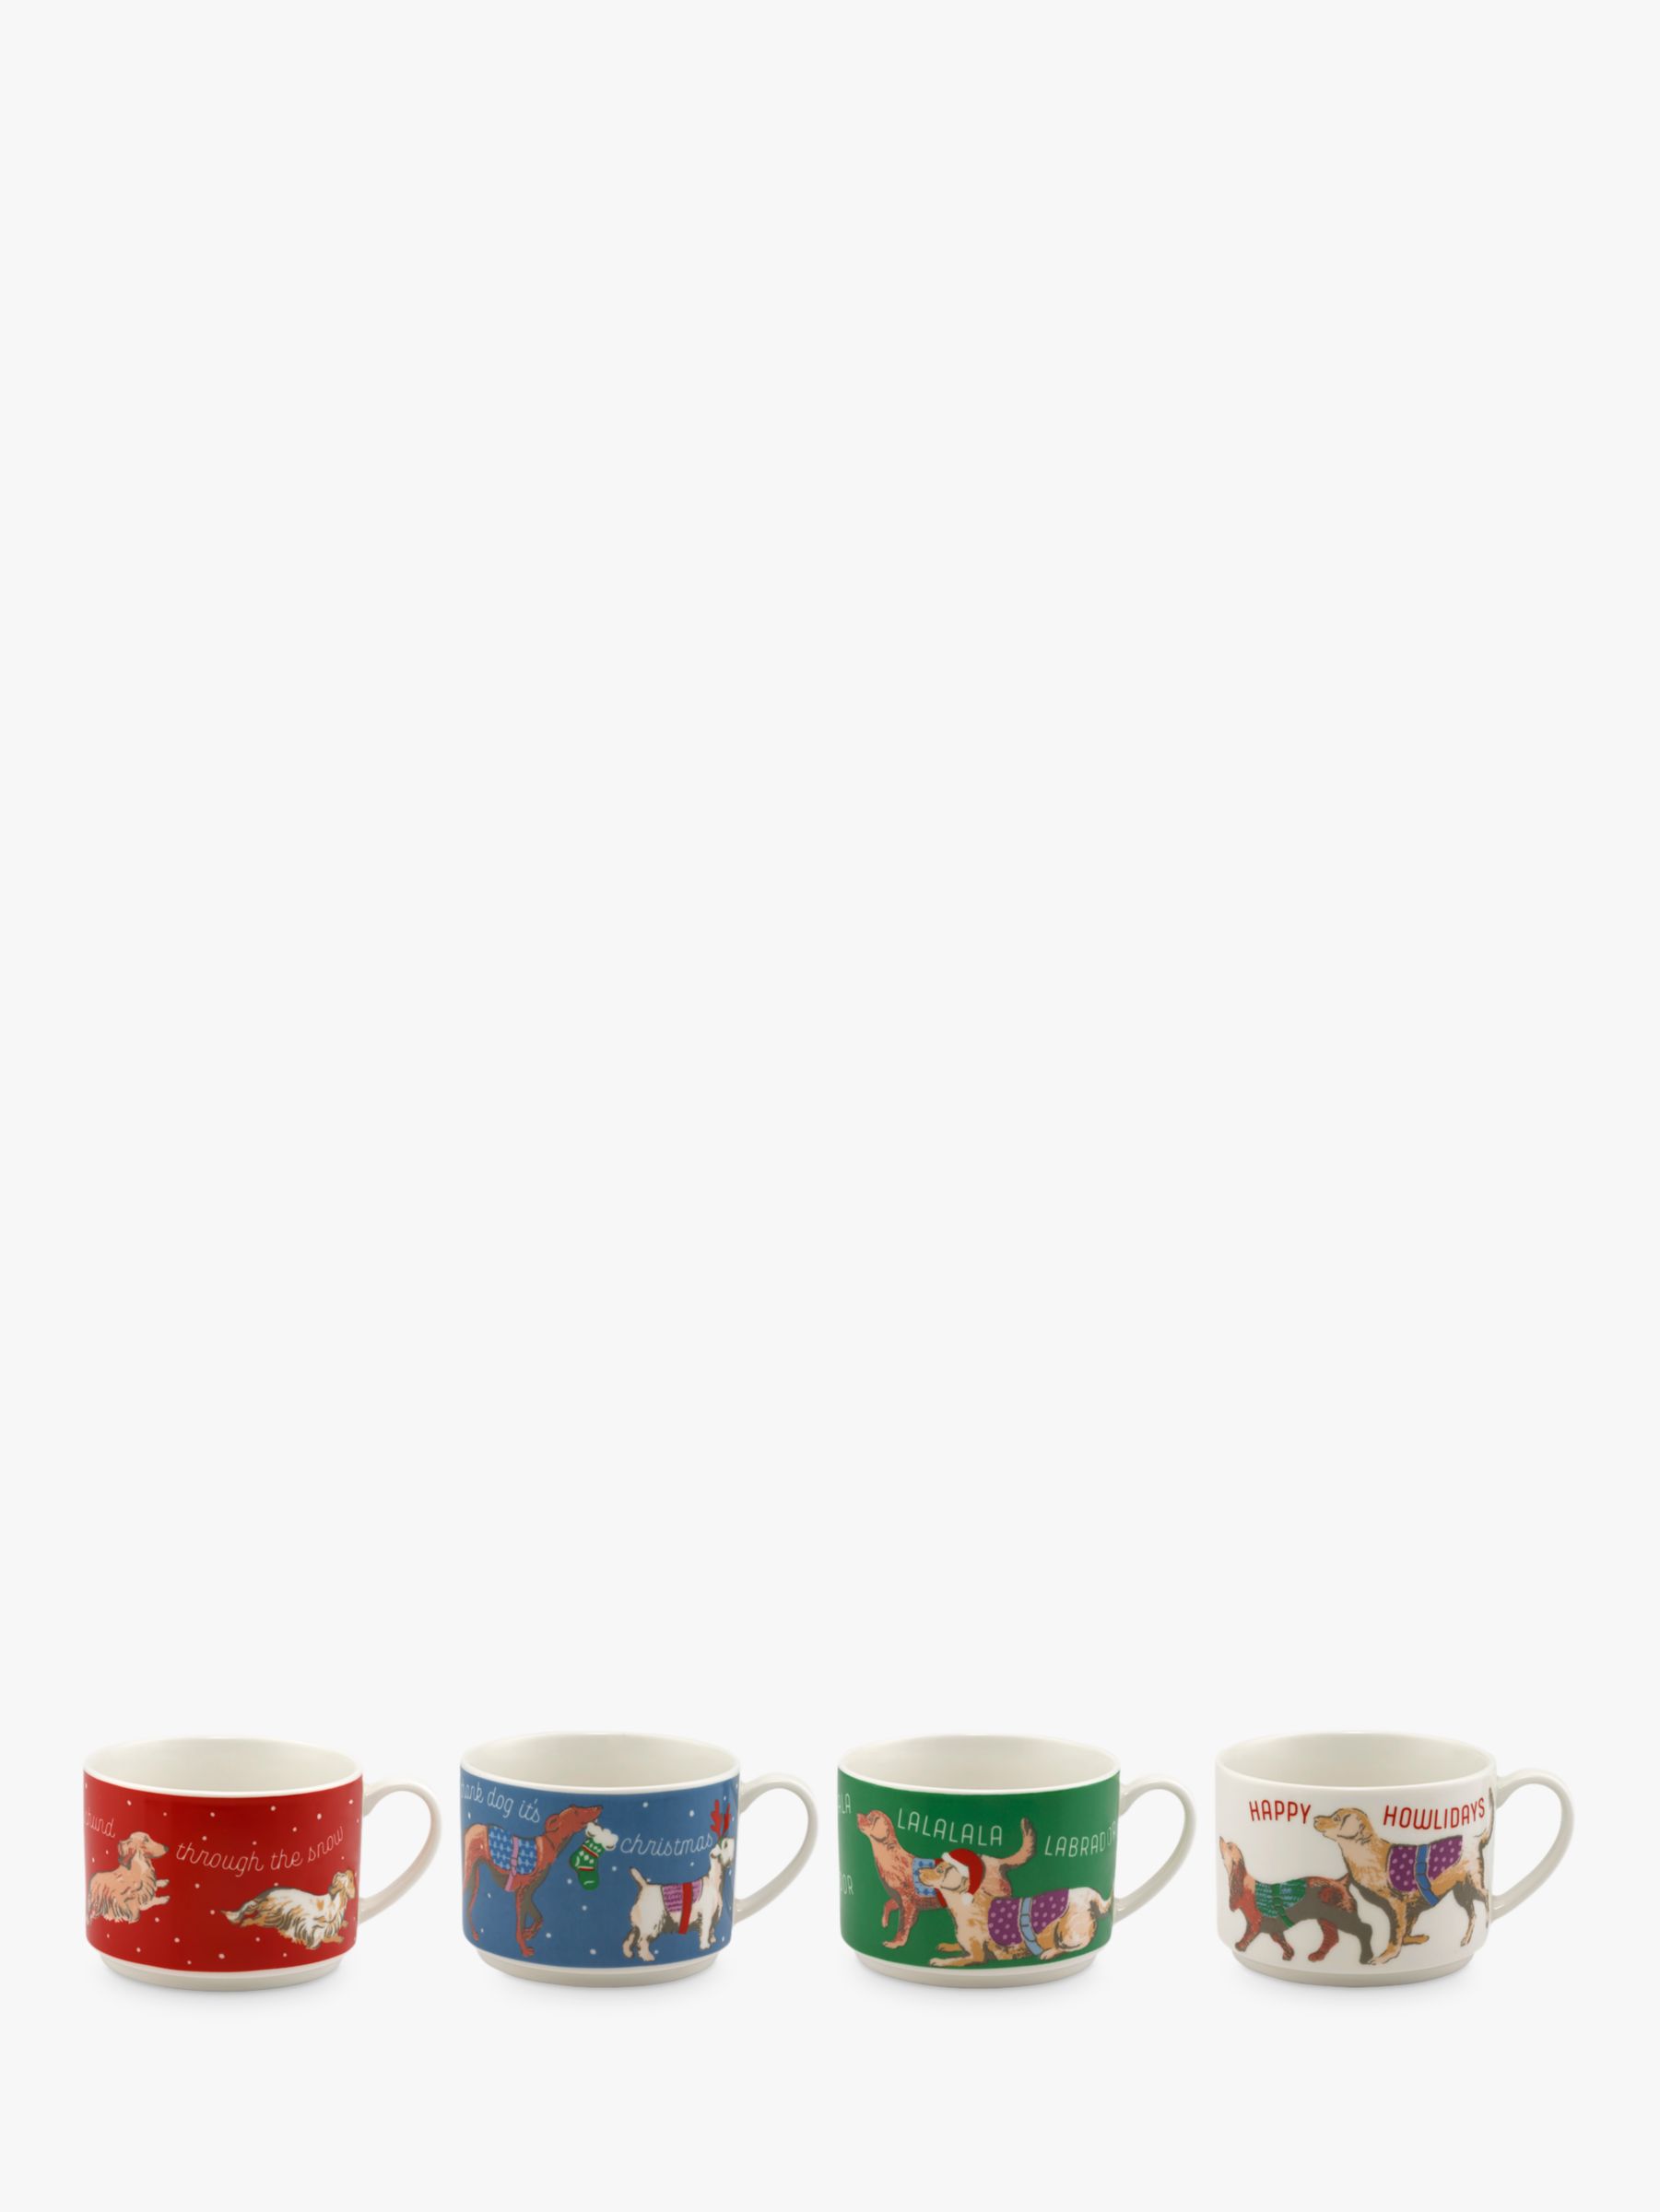 cath kidston stacking mugs